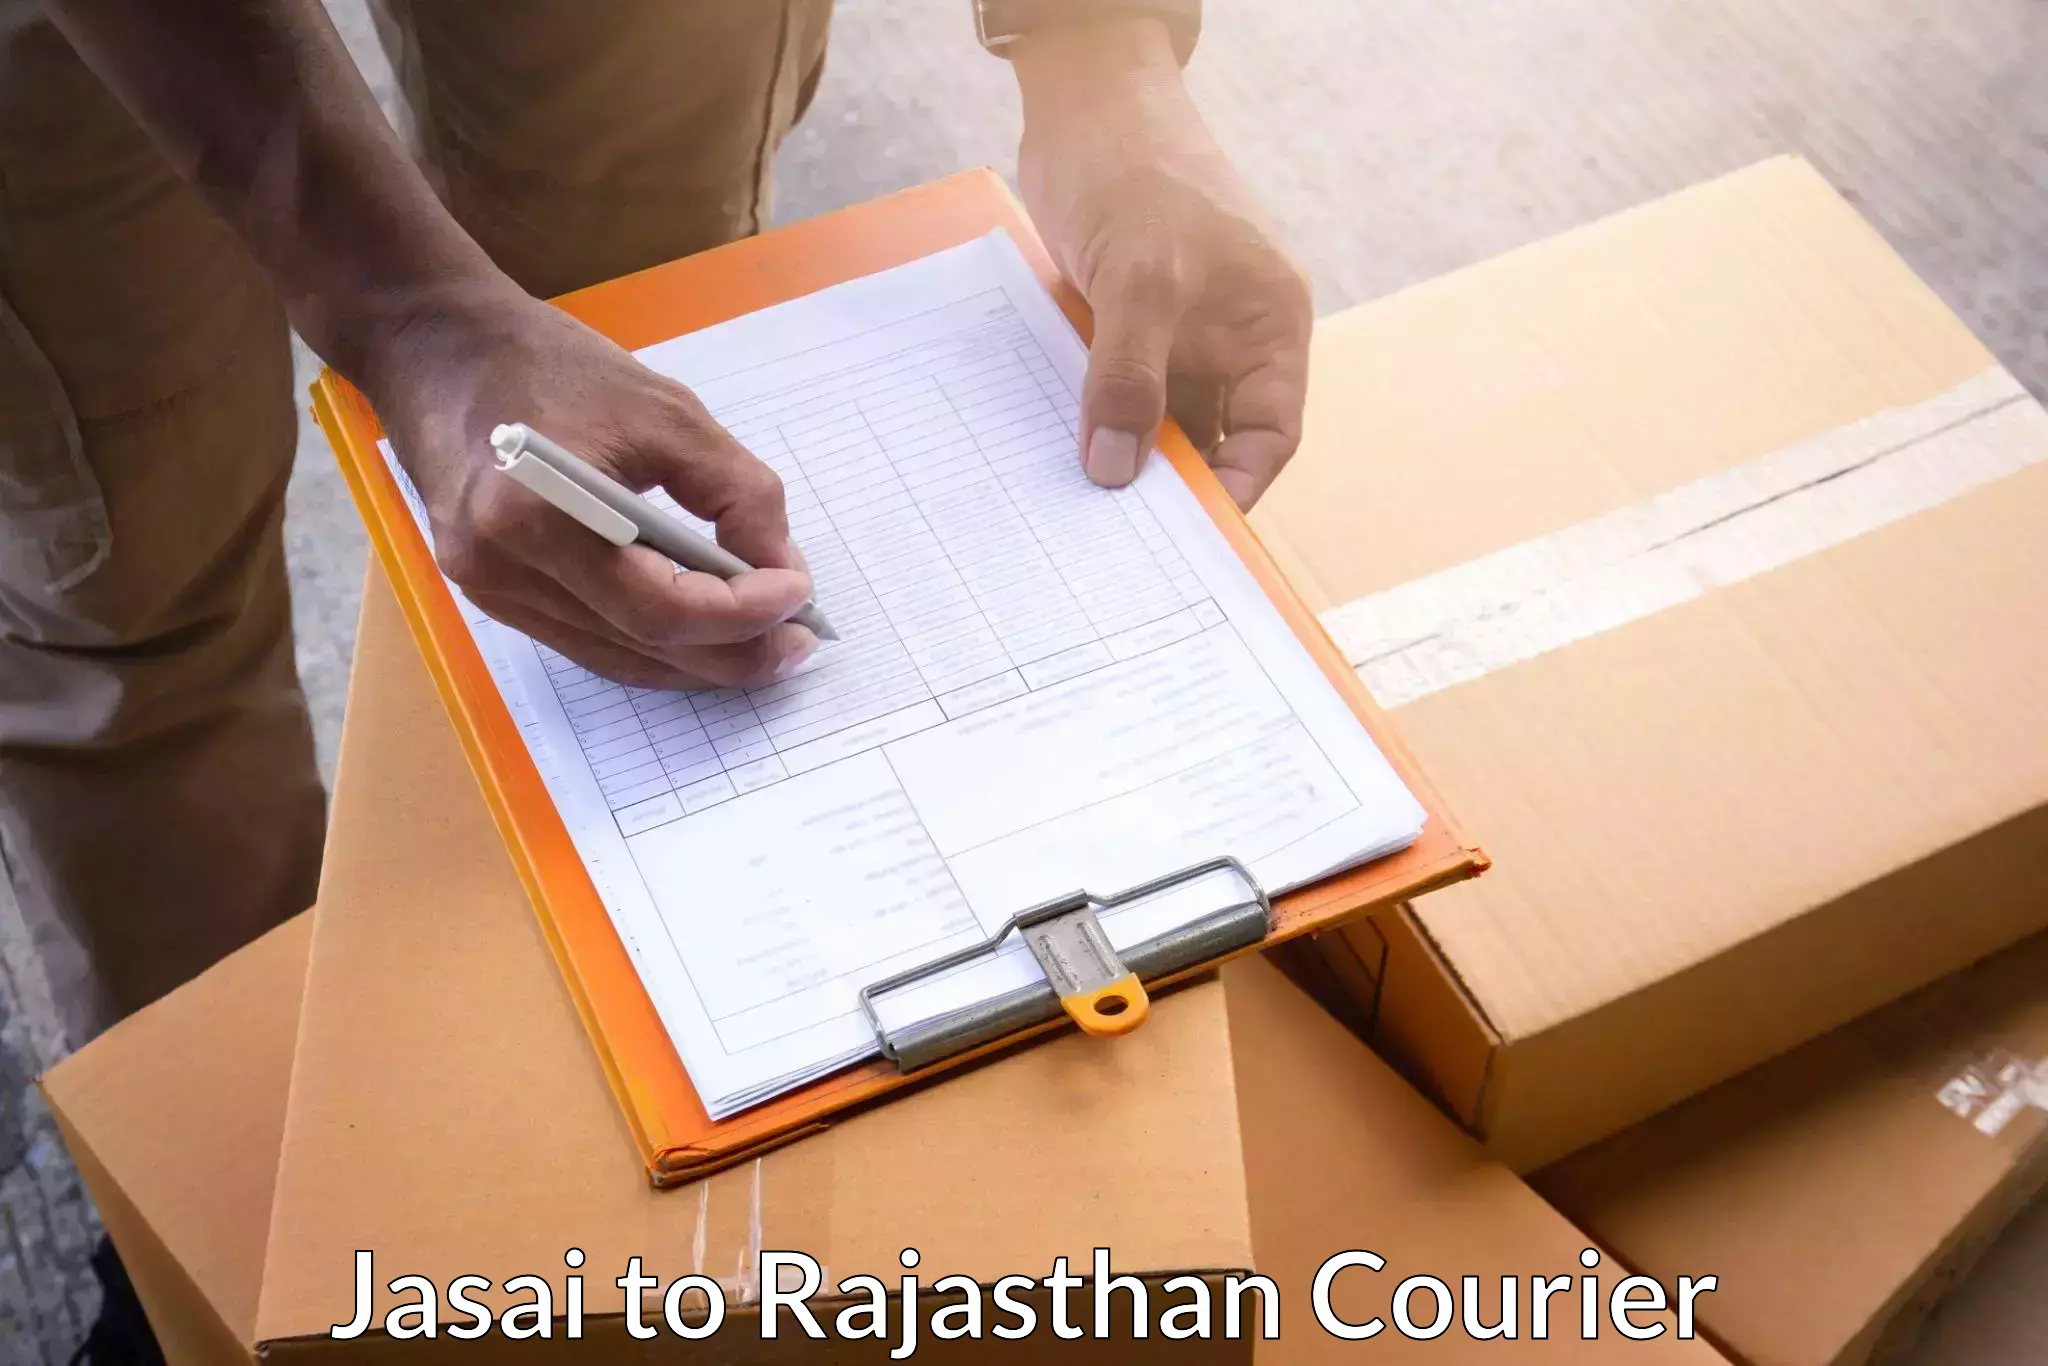 Express delivery network Jasai to Neem ka Thana